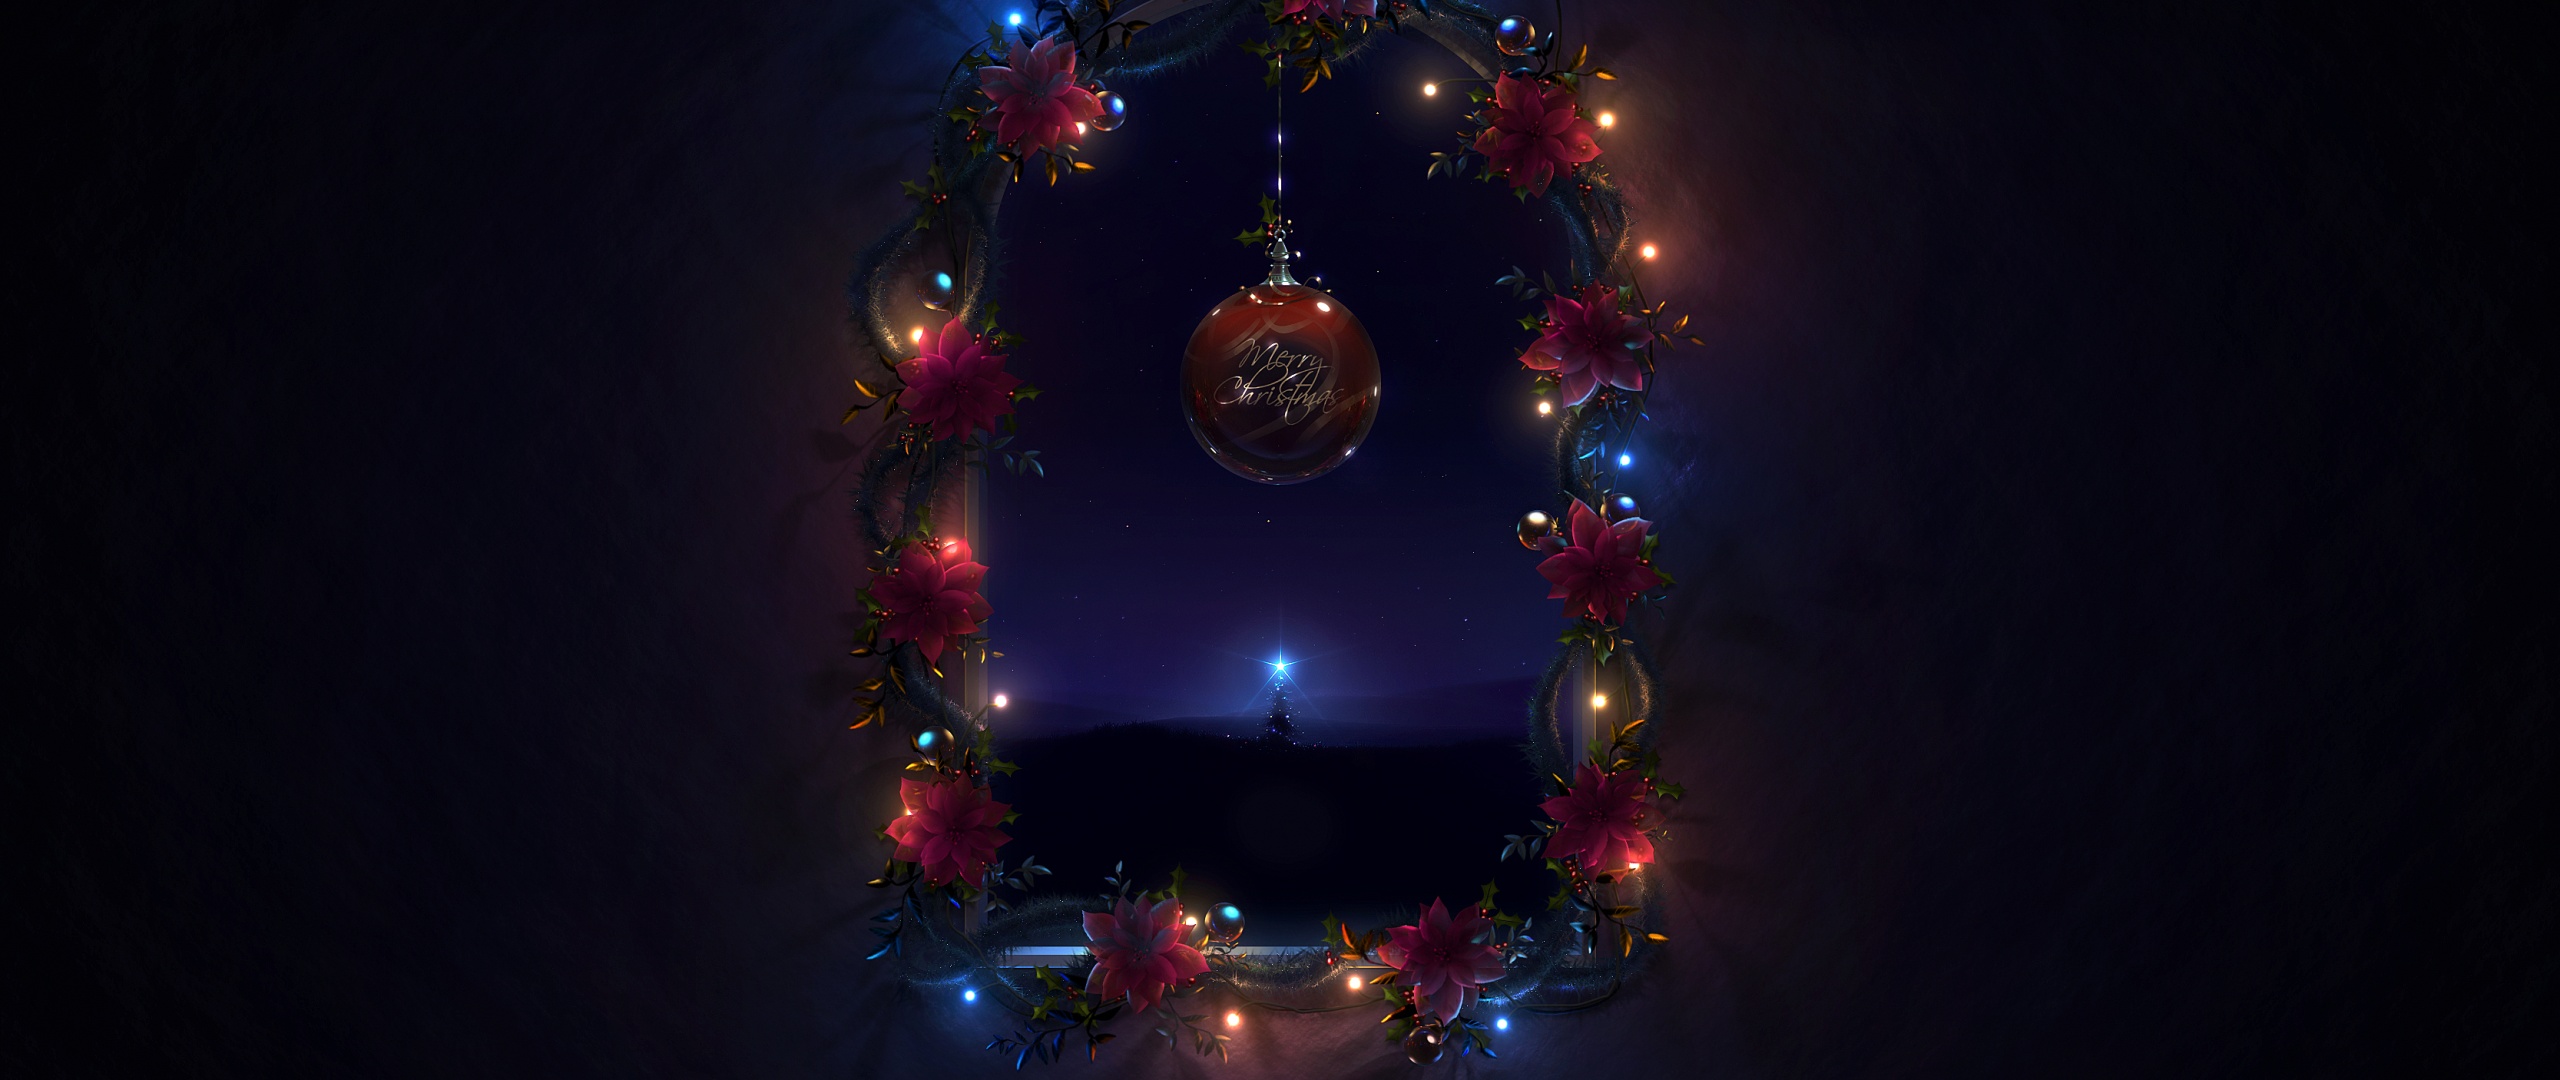 Trang trí Giáng sinh nền 4K giúp bạn tạo ra bầu không khí vui vẻ khi trang trí nền desktop của mình. Đêm Giáng sinh với những chiếc đèn lấp lánh càng làm cho không khí trang trọng và màu sắc của Giáng sinh càng được tô điểm. Hãy cùng tạo ra những bức ảnh đẹp cho mùa Giáng sinh tràn đầy niềm vui.